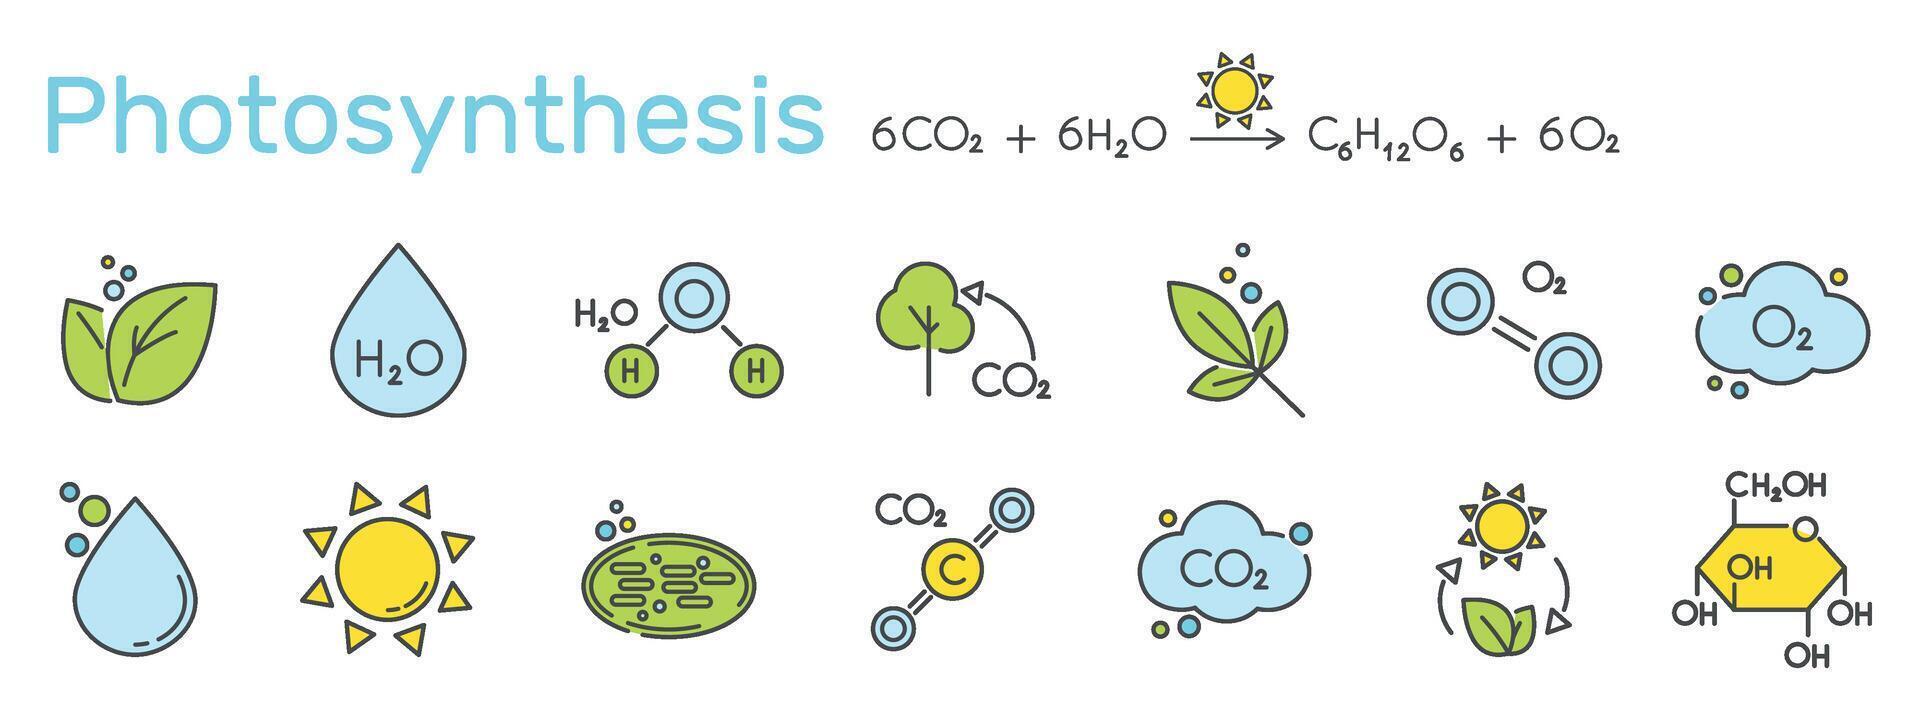 conjunto de color íconos relacionado a fotosíntesis. ecuación, cloroplasto, clorofila, sol, agua, glucosa, azúcar, hoja, planta ilustración. vector